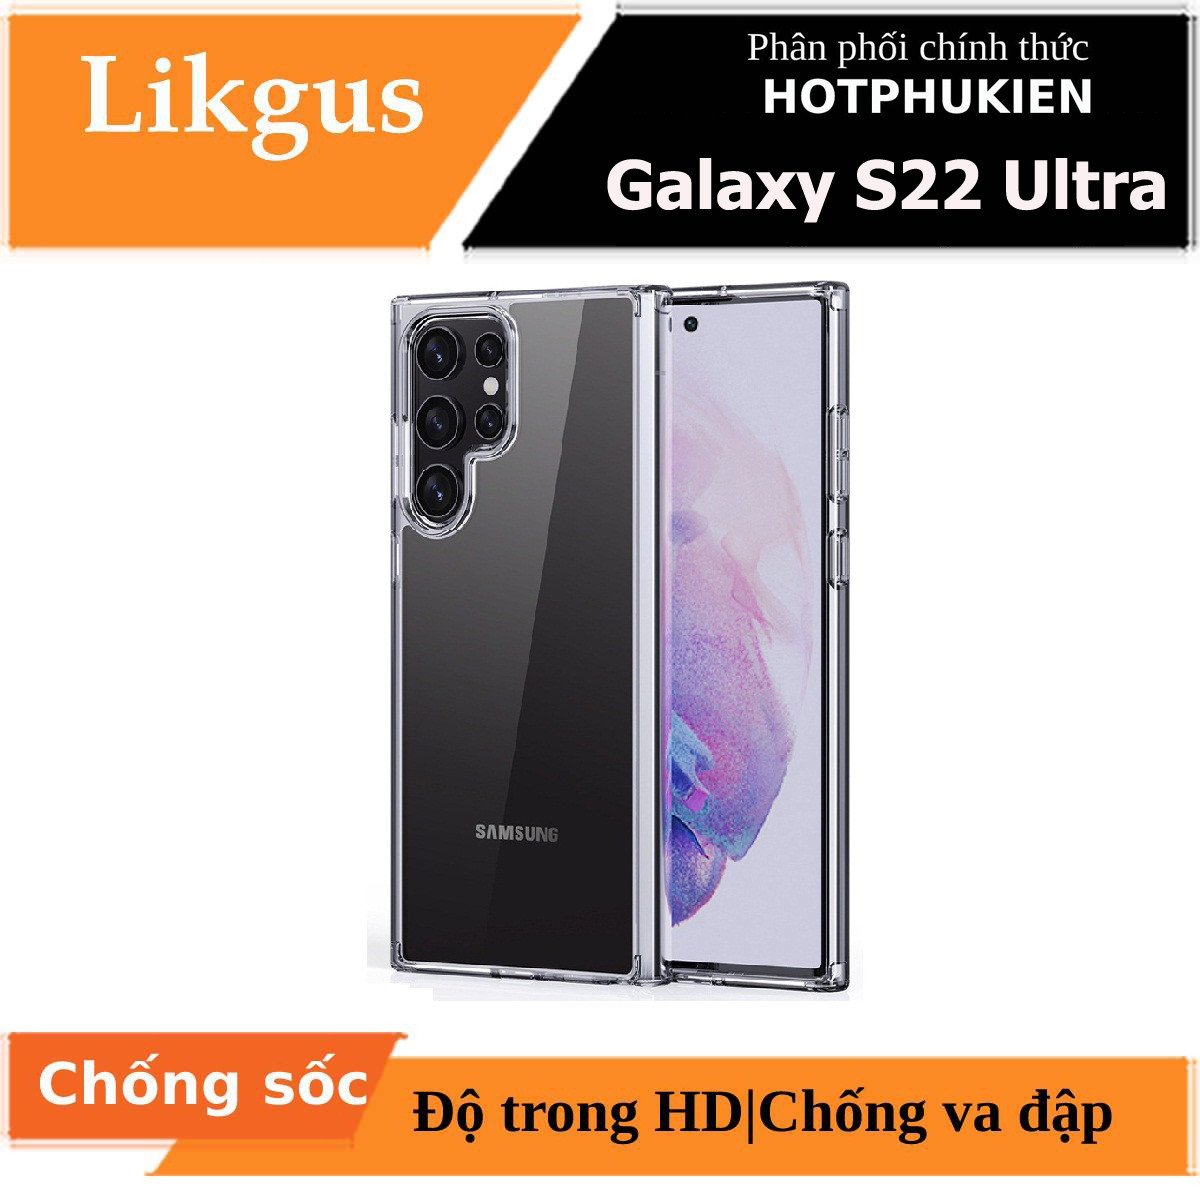 Ốp lưng chống sốc trong suốt cho Samsung Galaxy S22 Ultra hiệu Likgus Crashproof